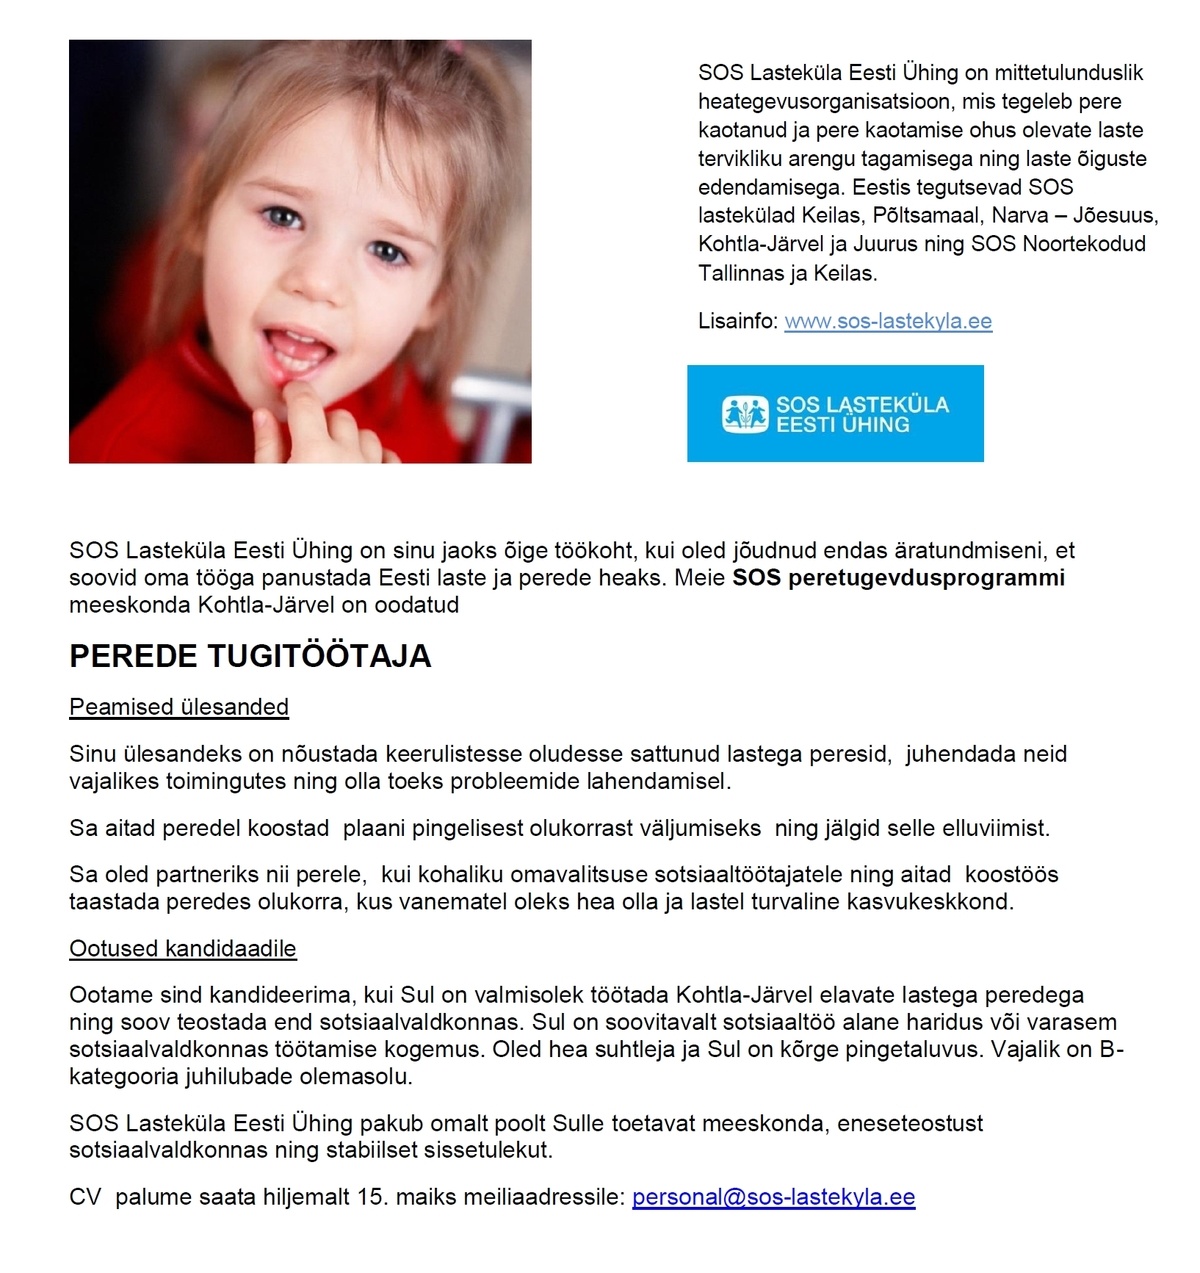 SOS Lasteküla Eesti Ühing Perede tugitöötaja